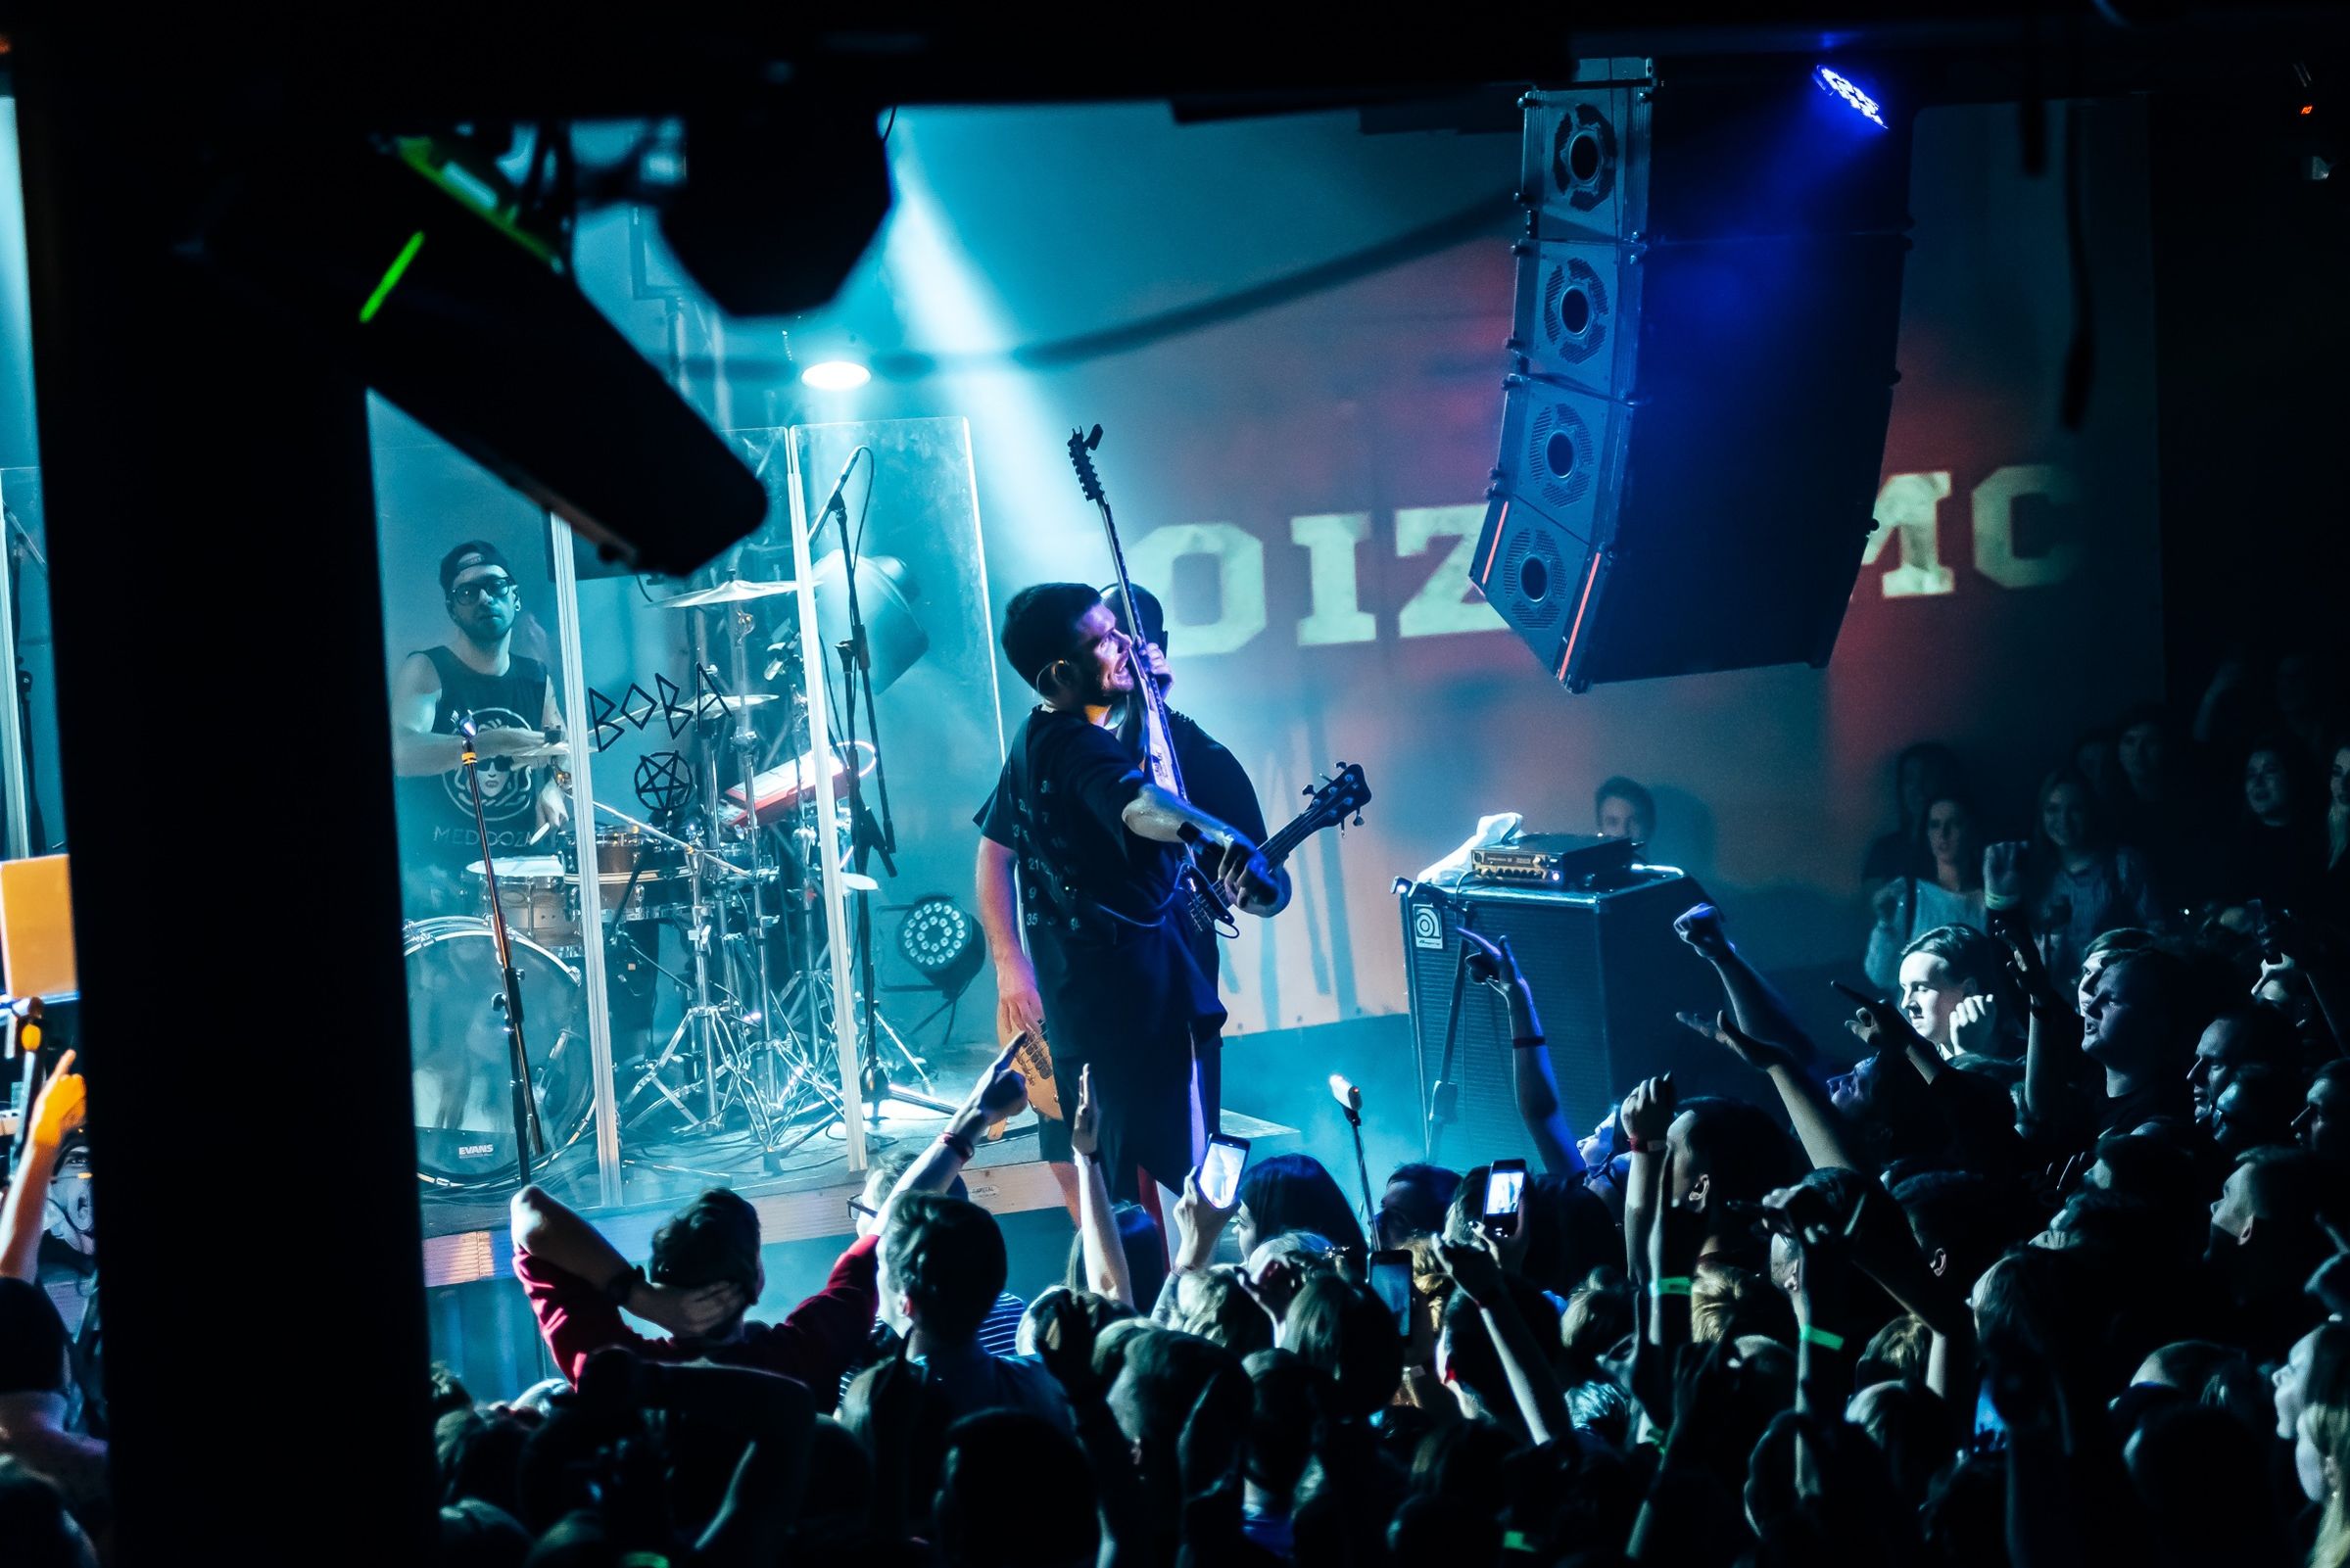 Известный российский рэпер Noize MC похвалил ярославскую публику